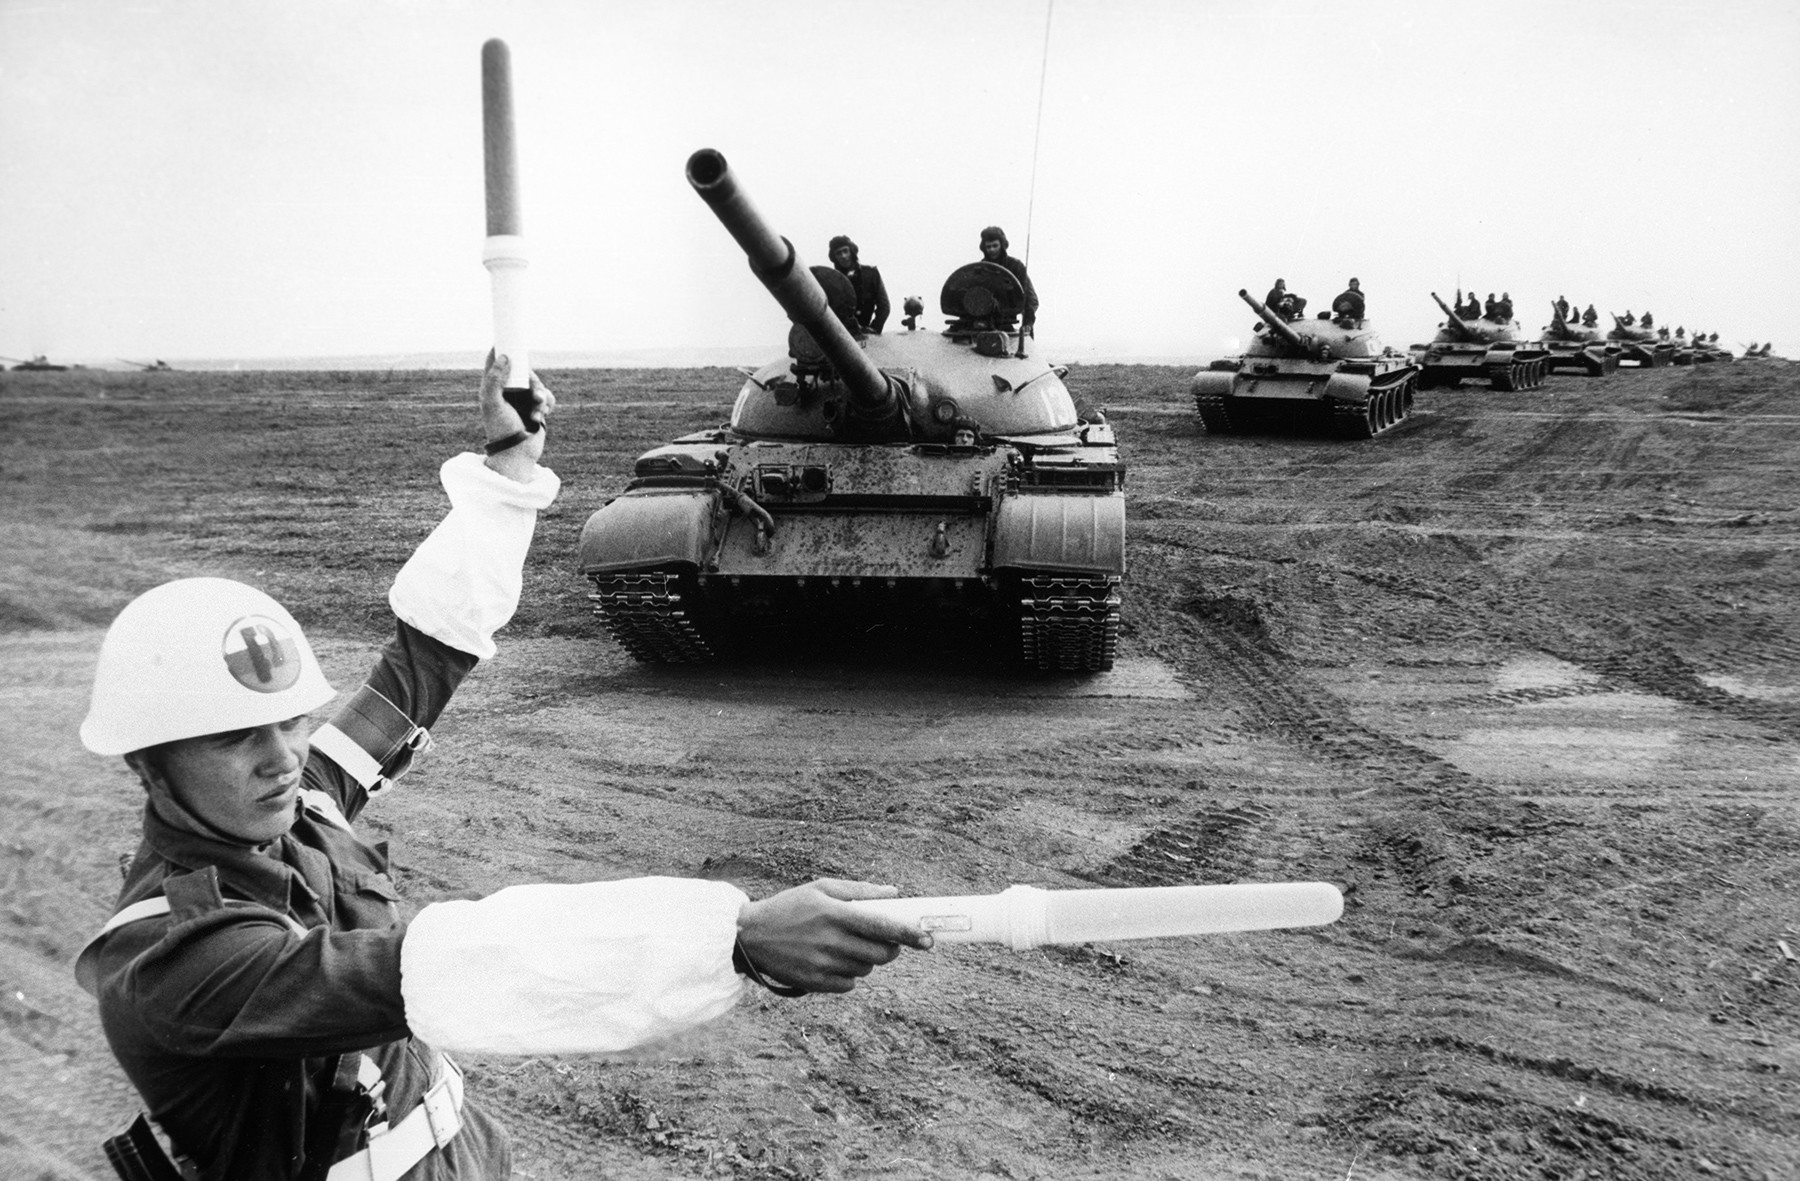 Pripadnik Bolgarske ljudske armade M. Stavrev na skupnih vajah Ščit-82 v Bolgariji jeseni 1982